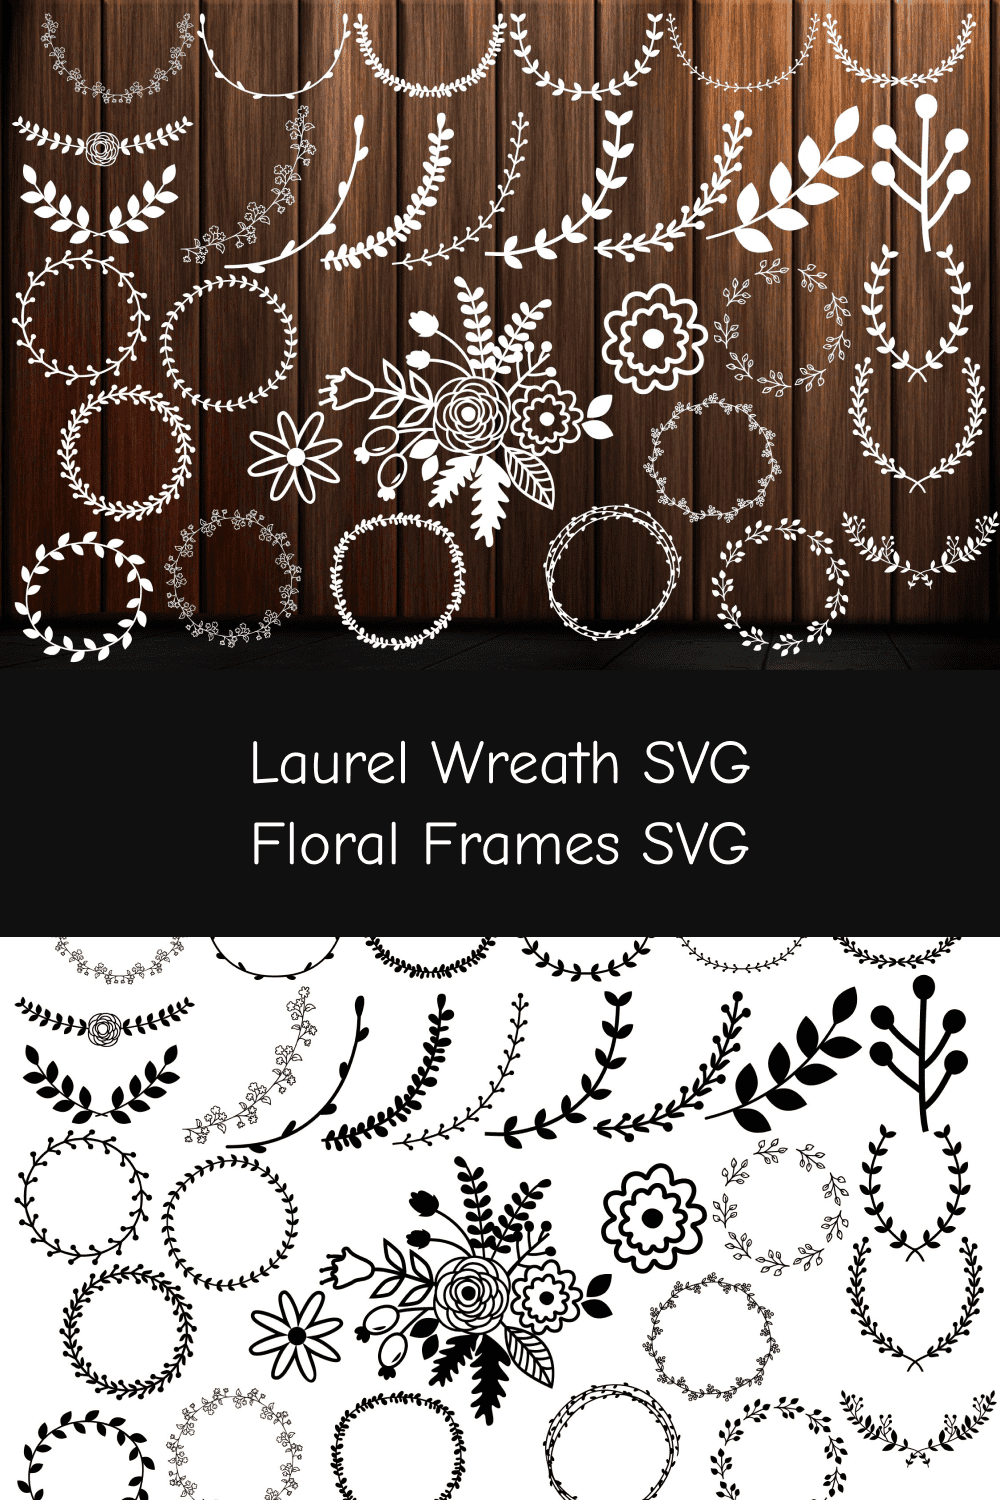 Laurel Wreath SVG, Floral Frames SVG.